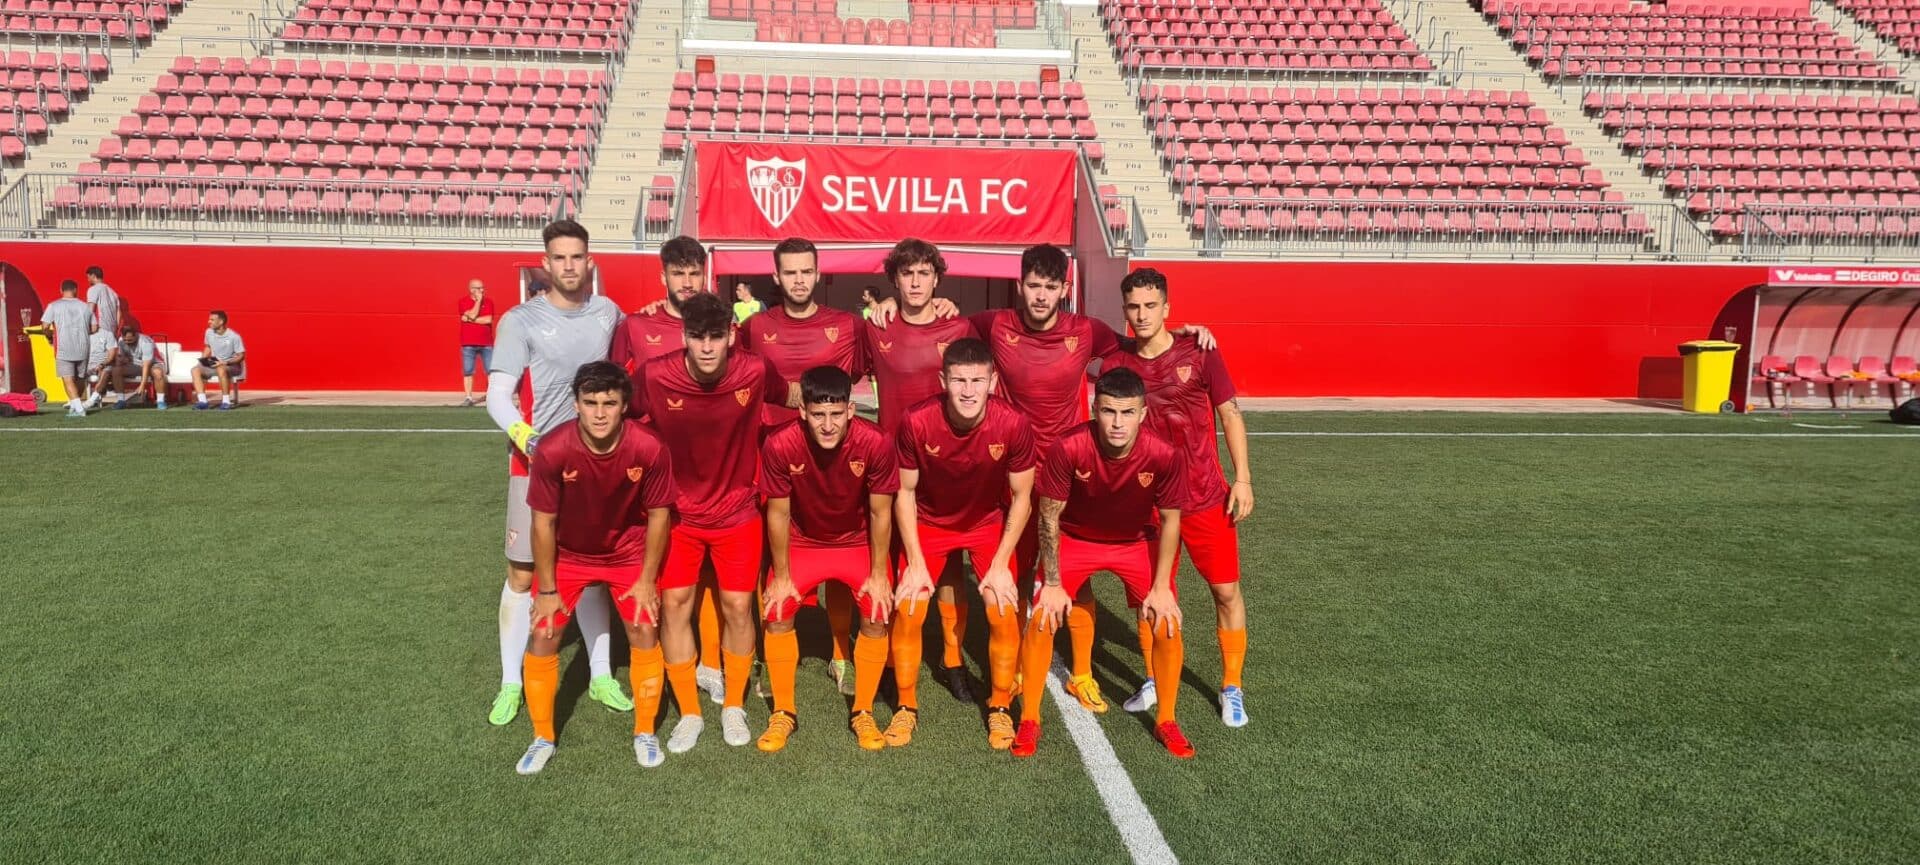 Sevilla atletico sevilla fc noticias